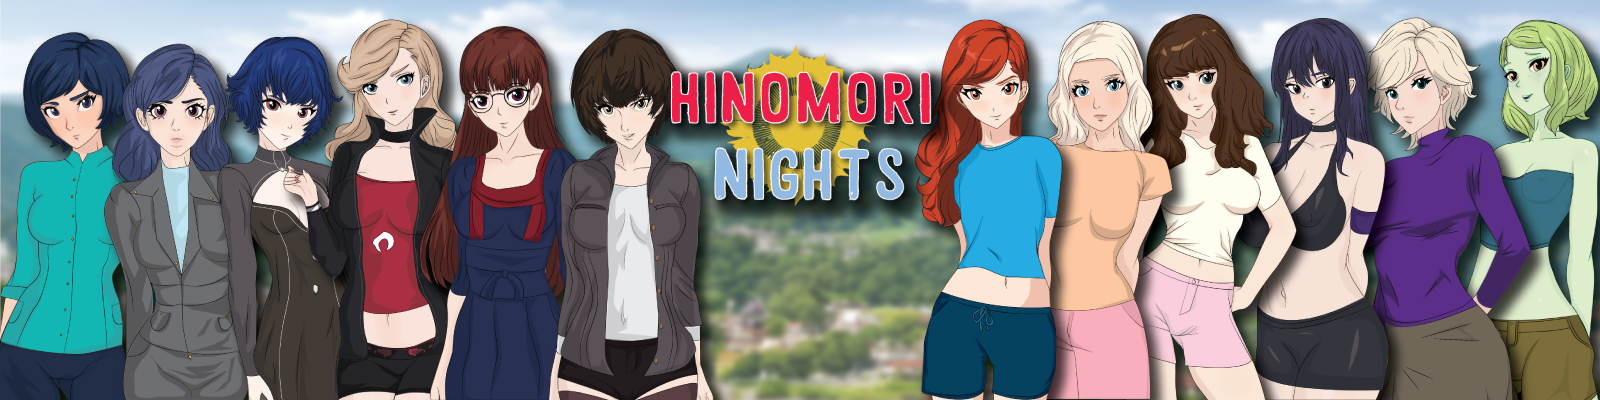 Hinomori Nights poster